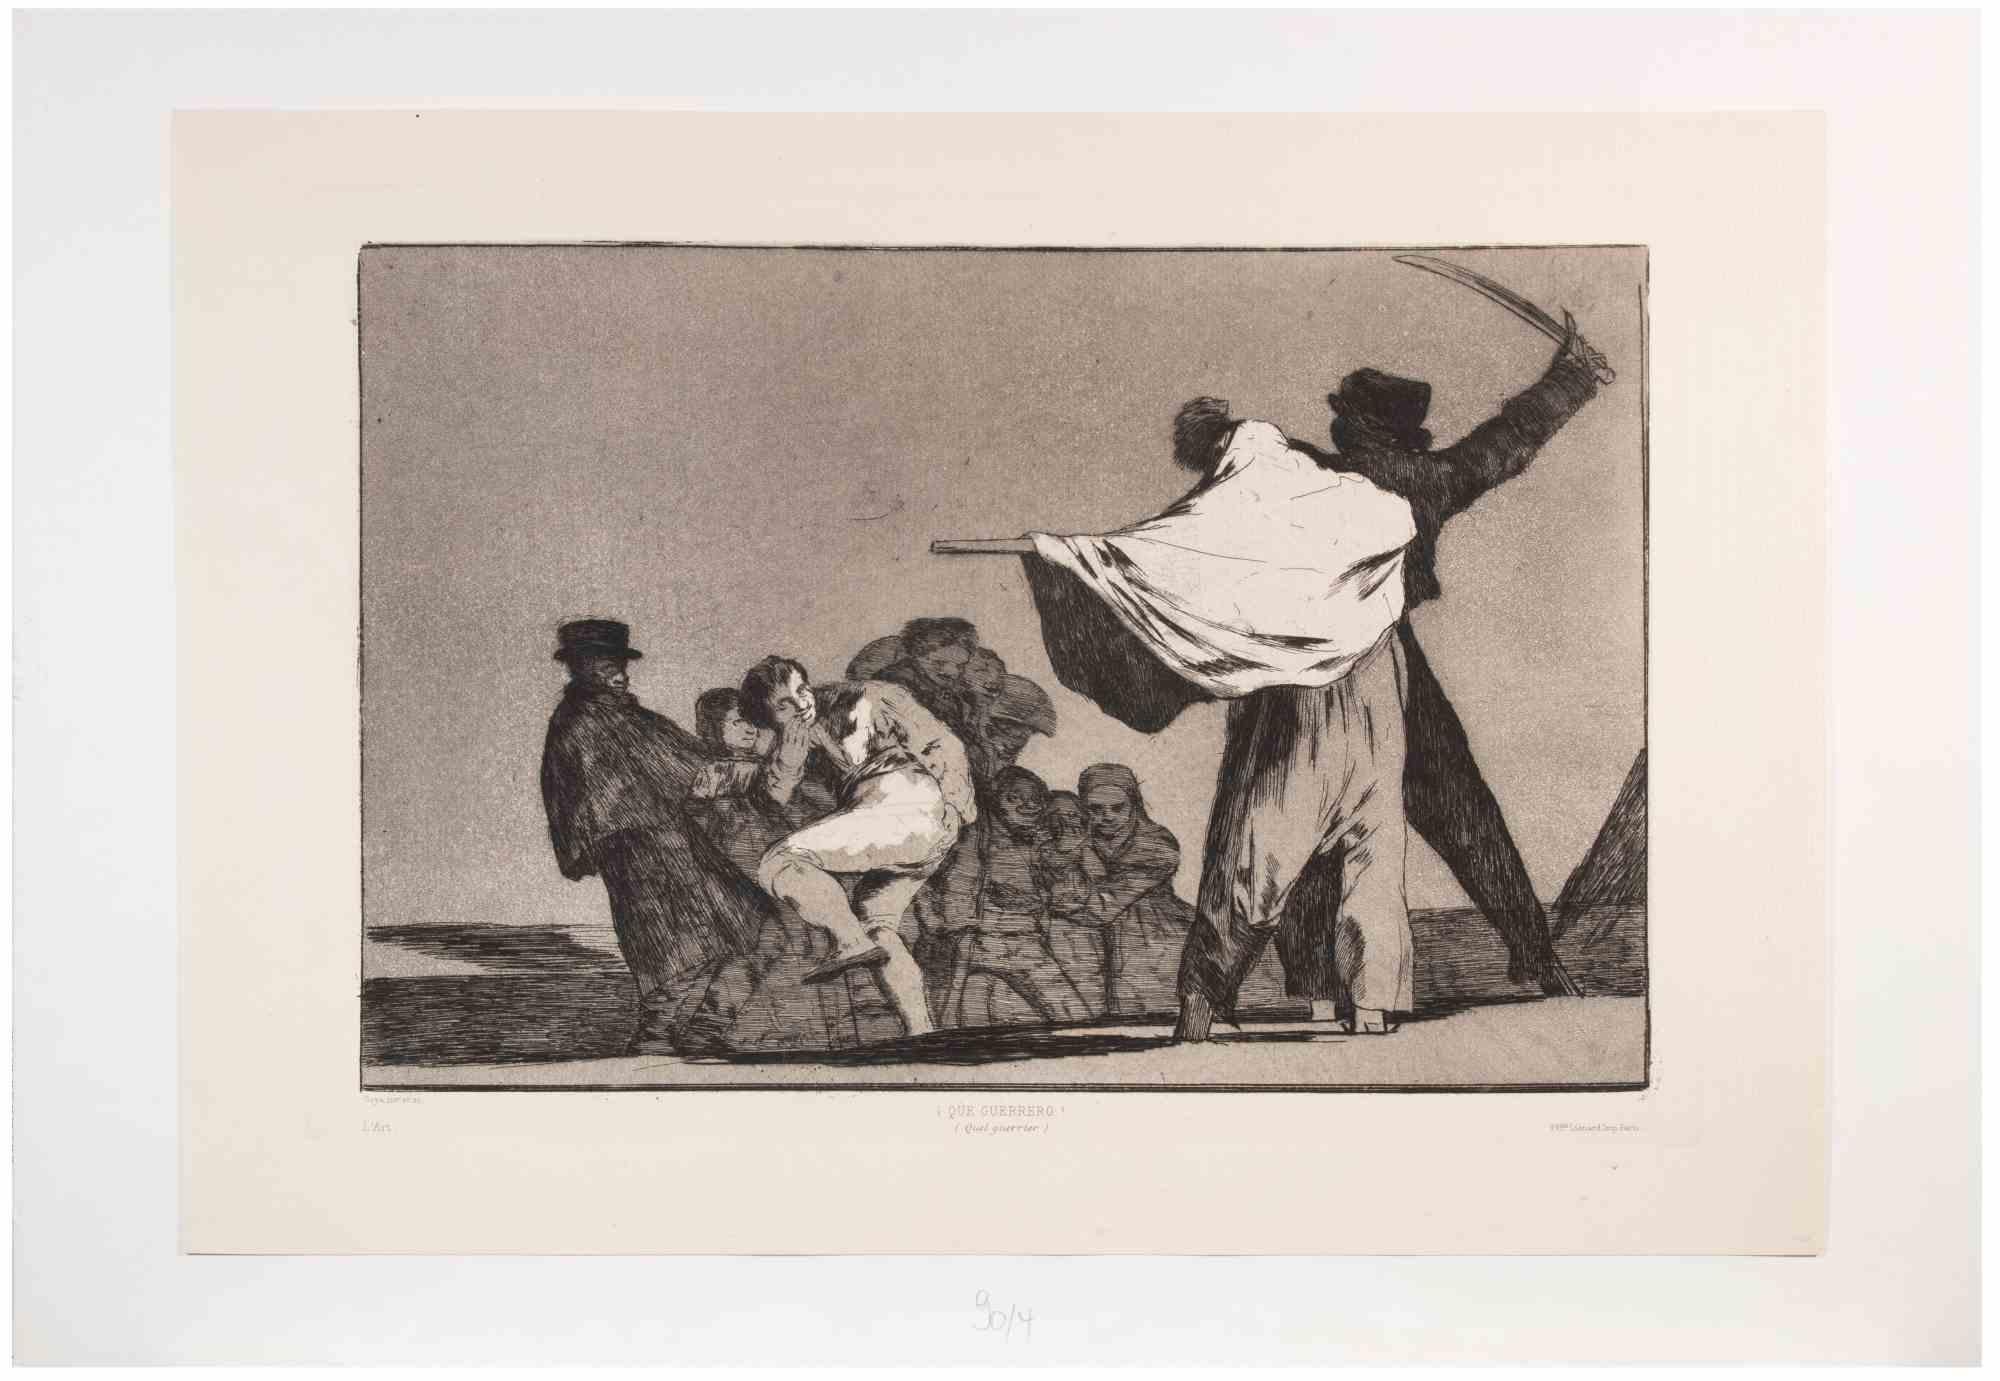 Francisco Goya, Que Guerrero! Radierung und Aquatinta, aus der Serie "Los Proverbios", realisiert 1815 und gedruckt 1877.

Dieses Exemplar gehört zu der Ausgabe von "L'Art", 1877. Mit Name, Titel, Drucker und Verlagsadresse in der Platte.

Auf